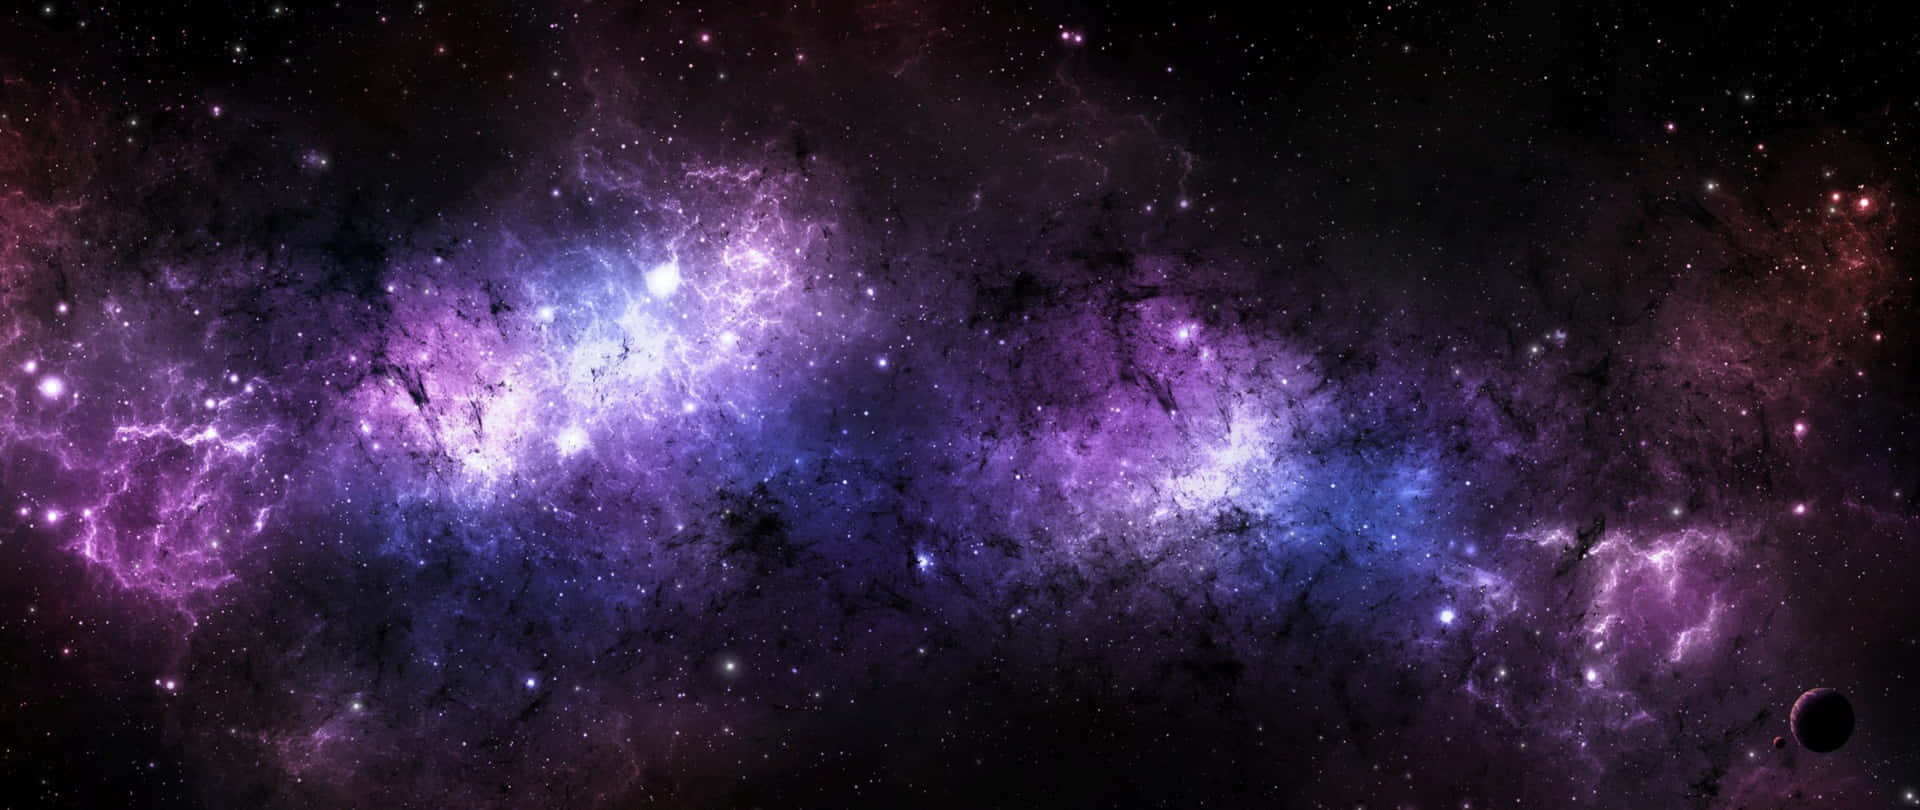 Einerstaunlicher Einblick In Eine Blendende Schwarze Und Violette Galaxie. Wallpaper